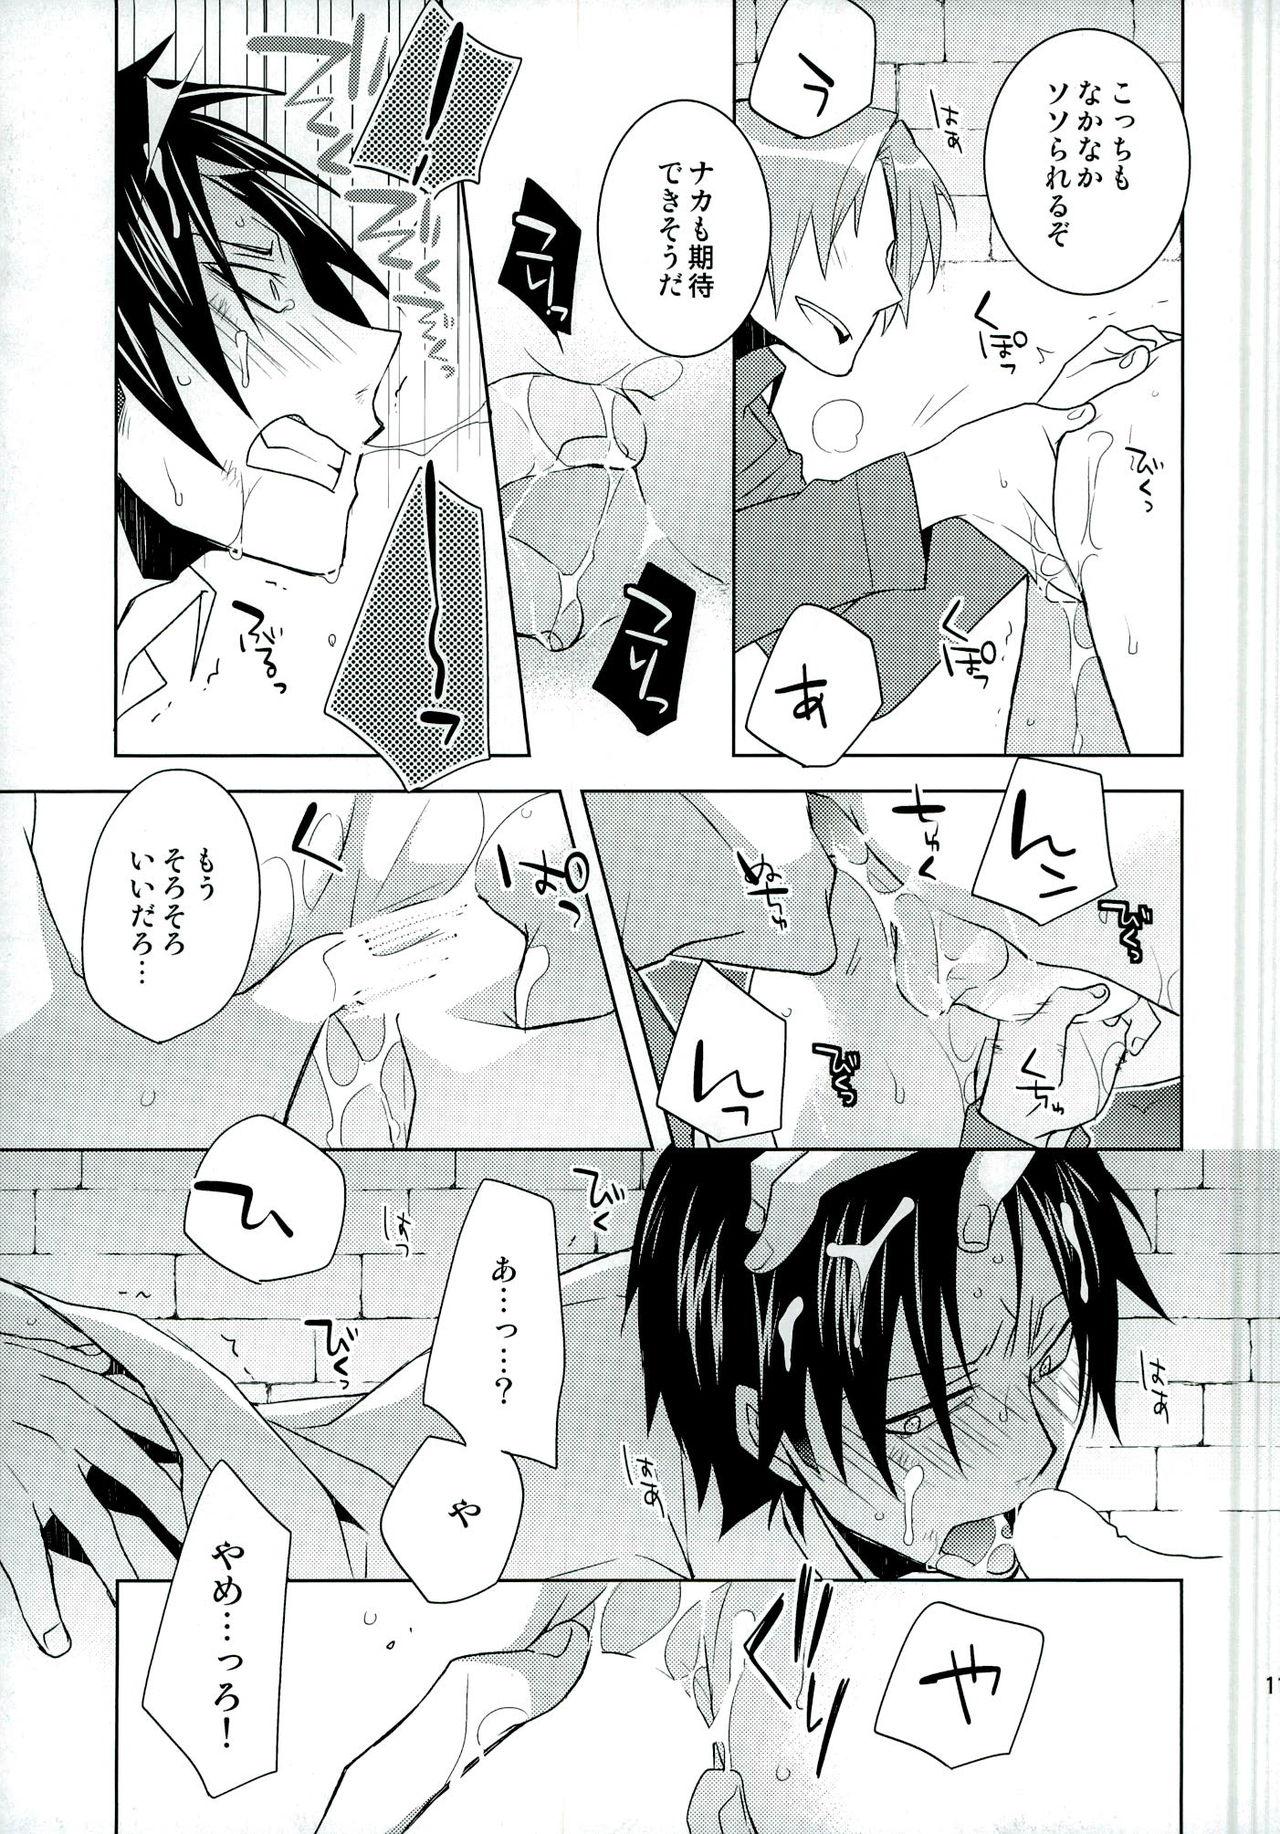 Dildos VIRGINAL - Shingeki no kyojin Animation - Page 11